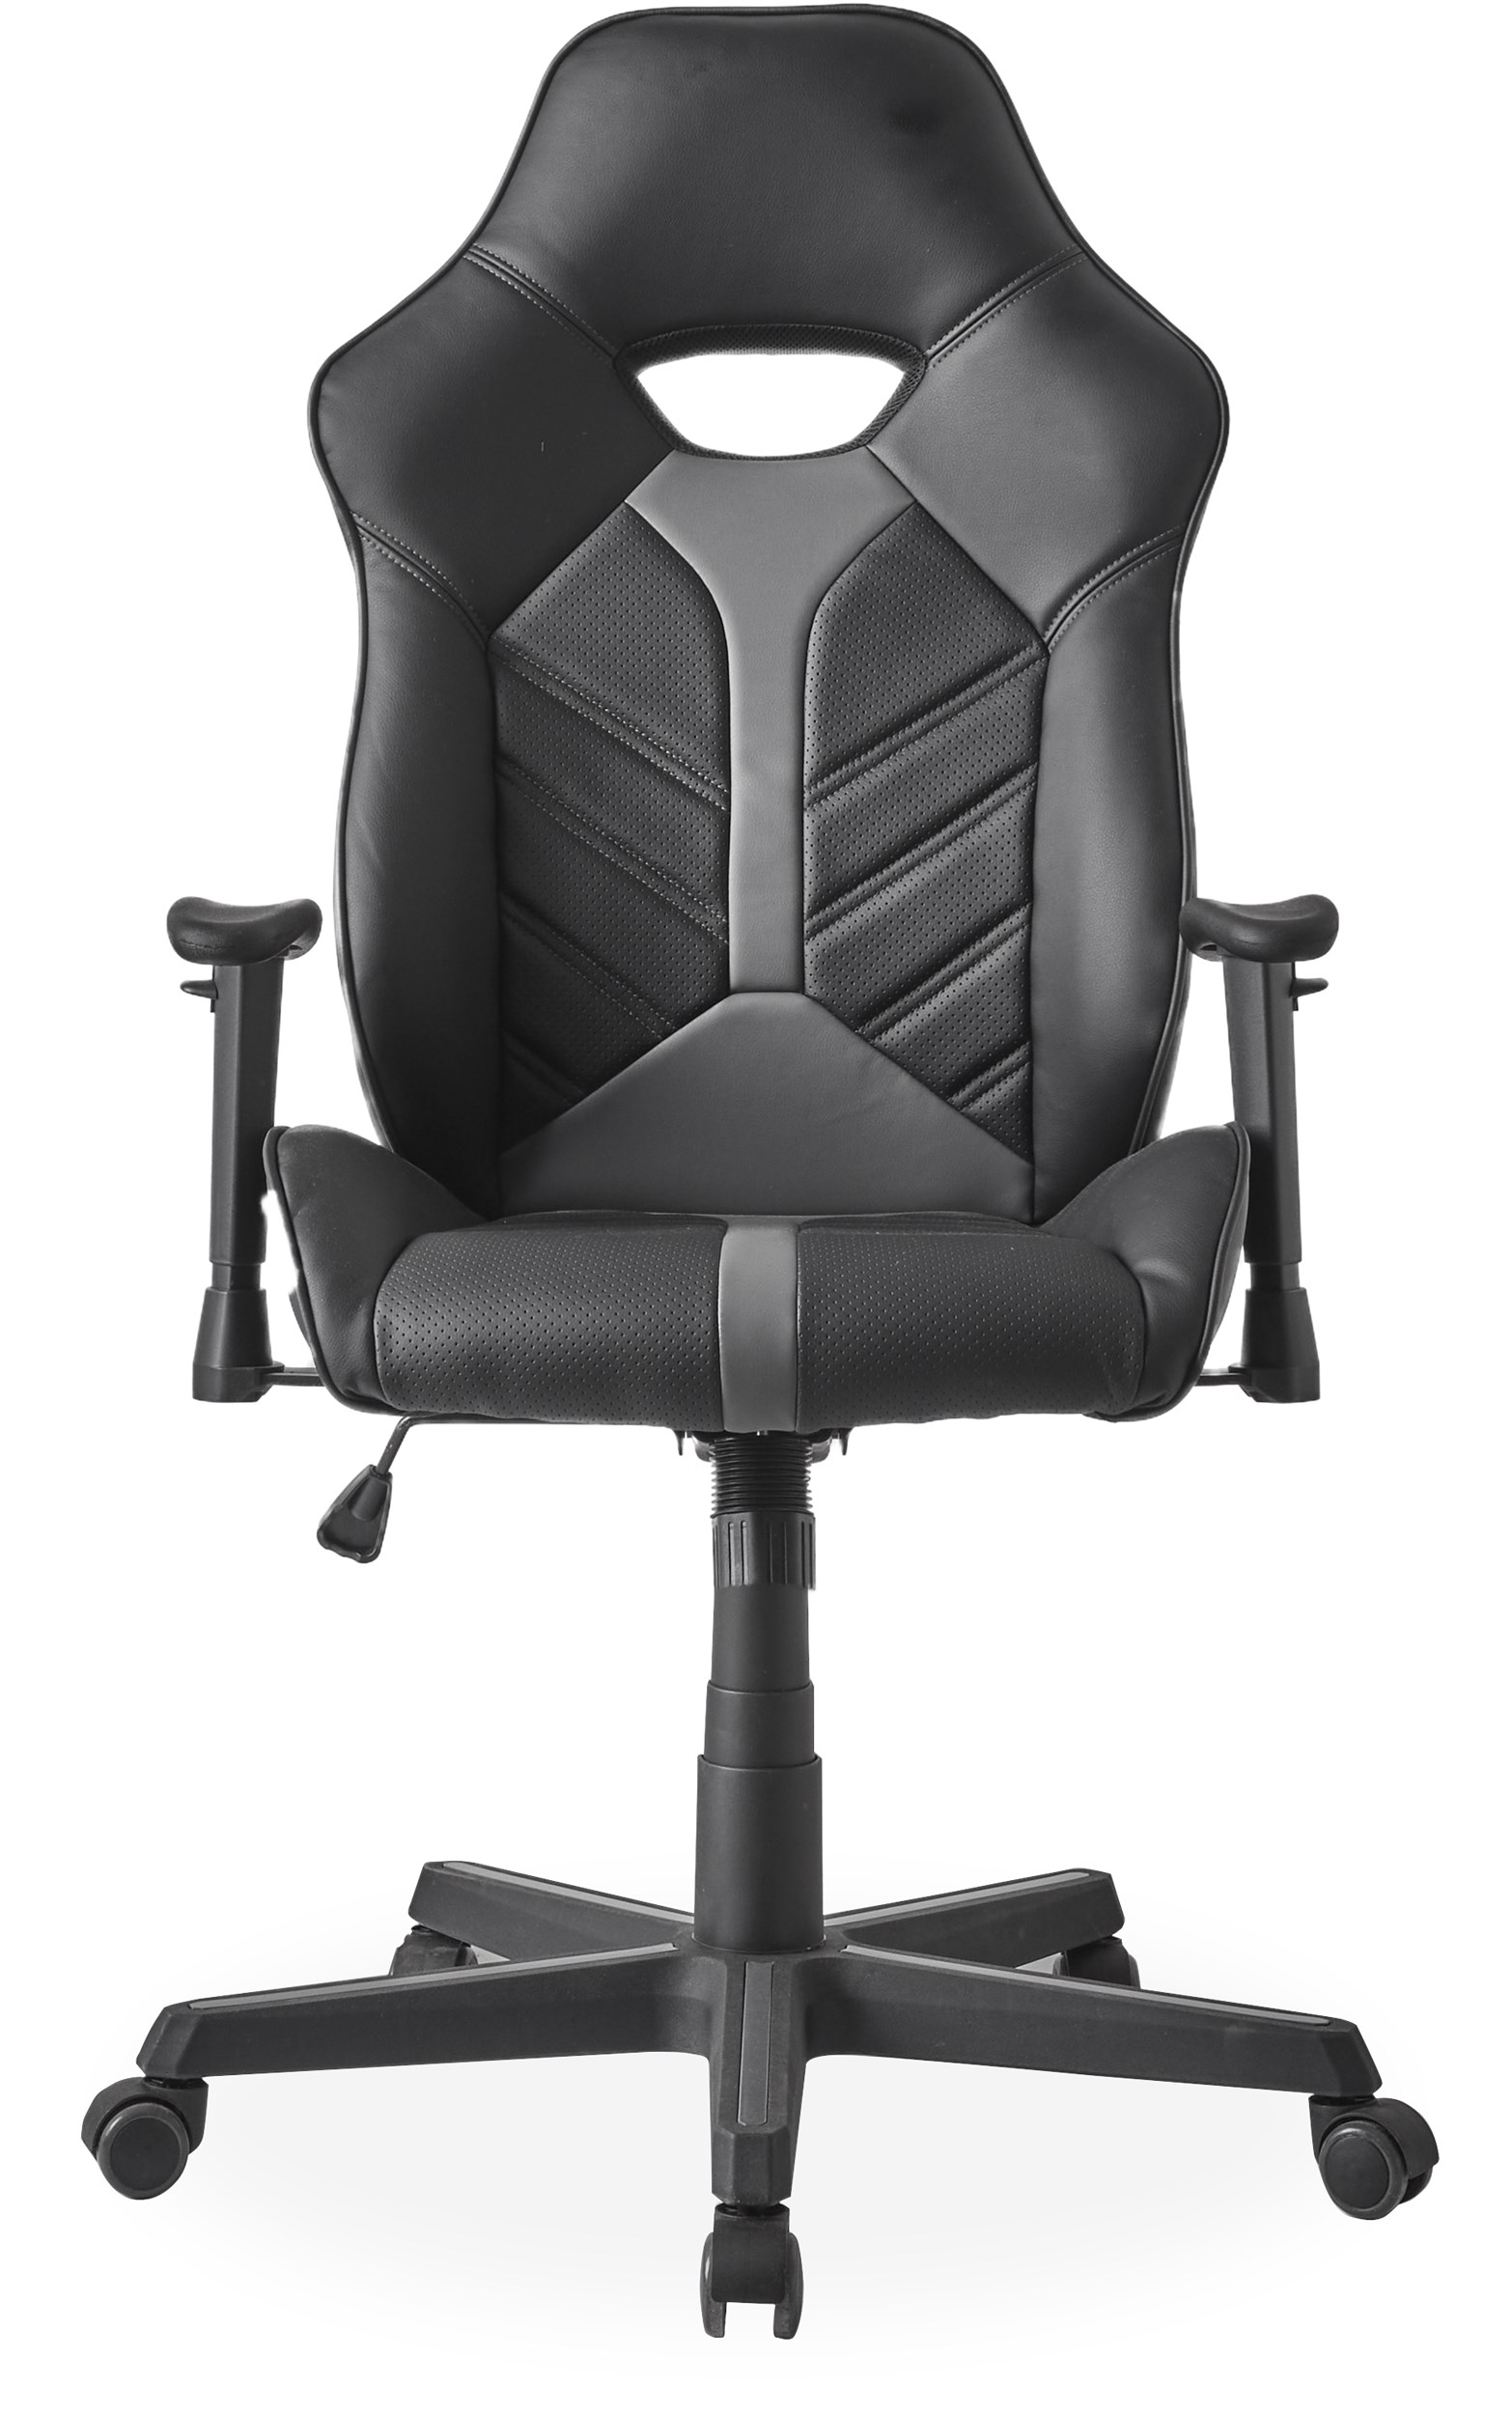 Strike Gamer stol - Sæde i sort/grå kunstlæder og stel i sort nylon m. sort/grå hjul